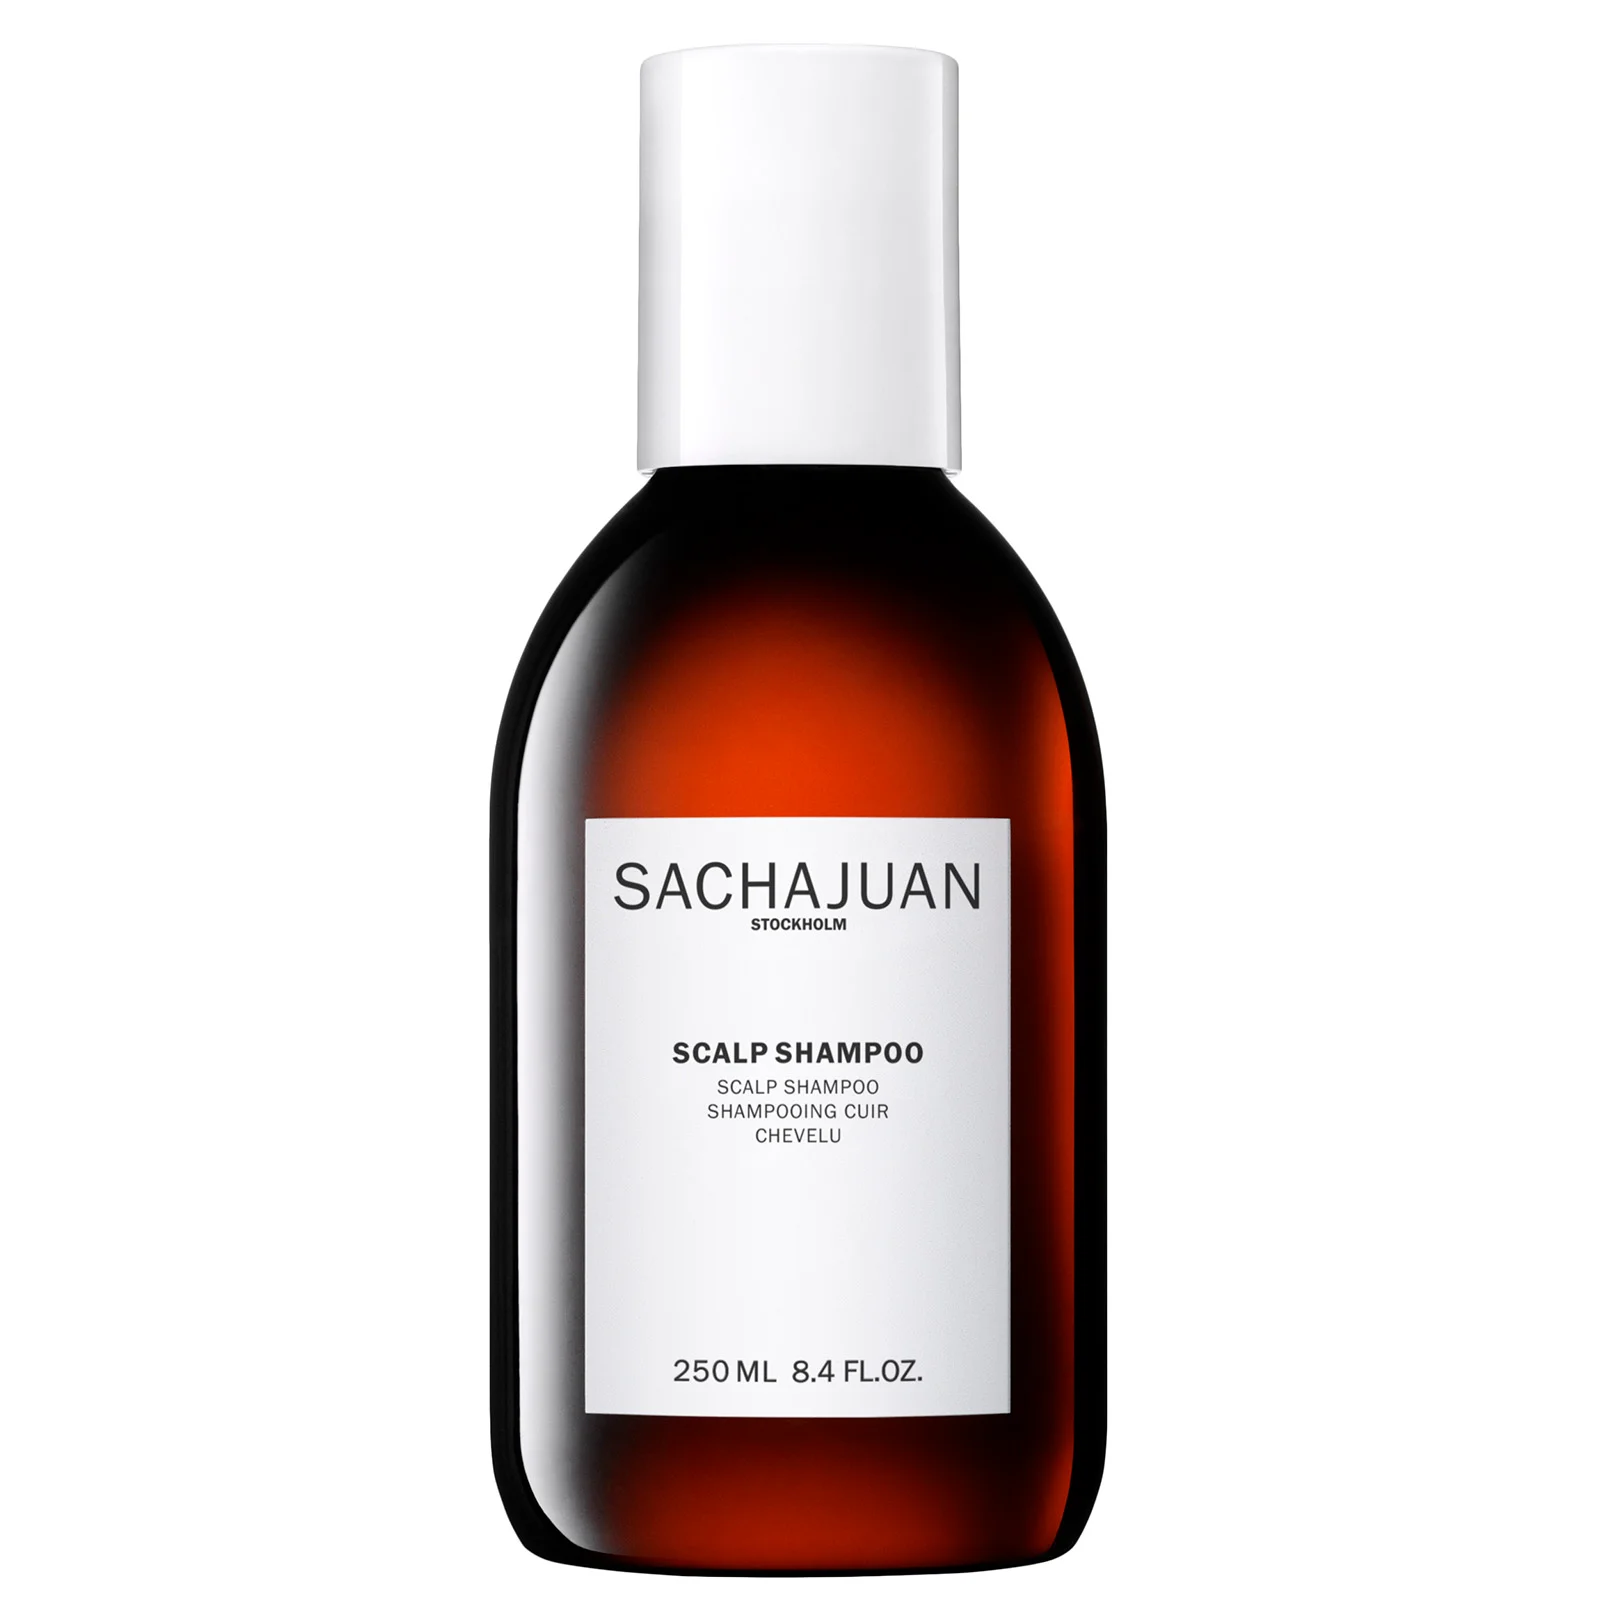 Sachajuan Scalp Shampoo 250ml Image 1